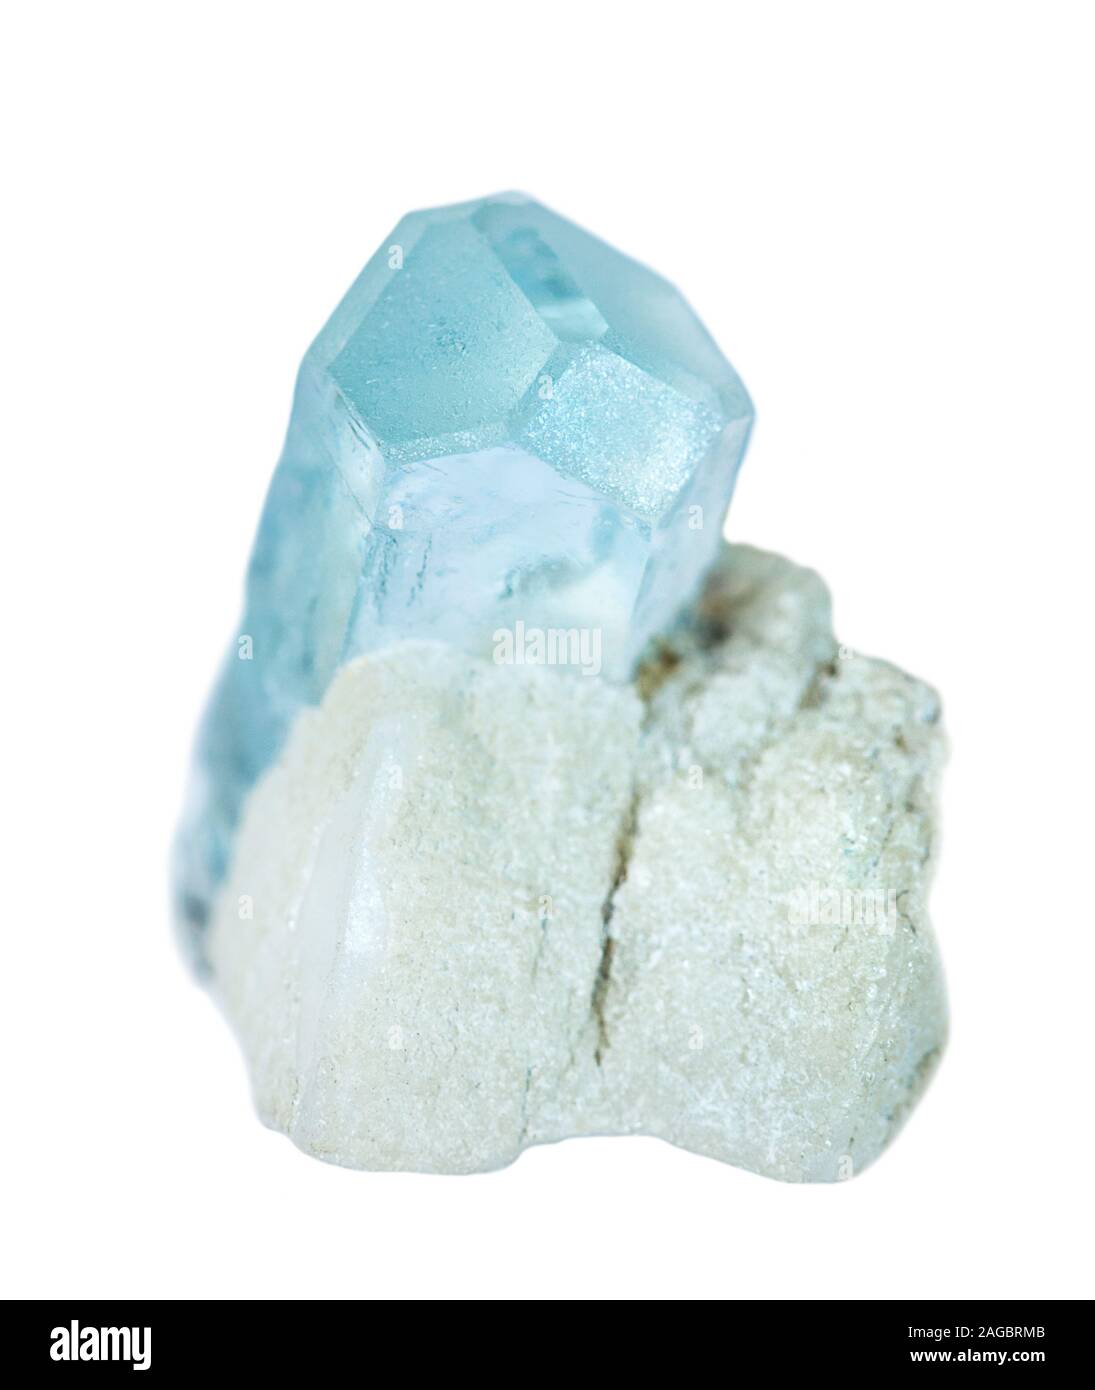 Blau Mineral Beryll, Aquamarin Edelstein bekannt, in einem weißen Albit Matrix auf weißem Hintergrund Stockfoto